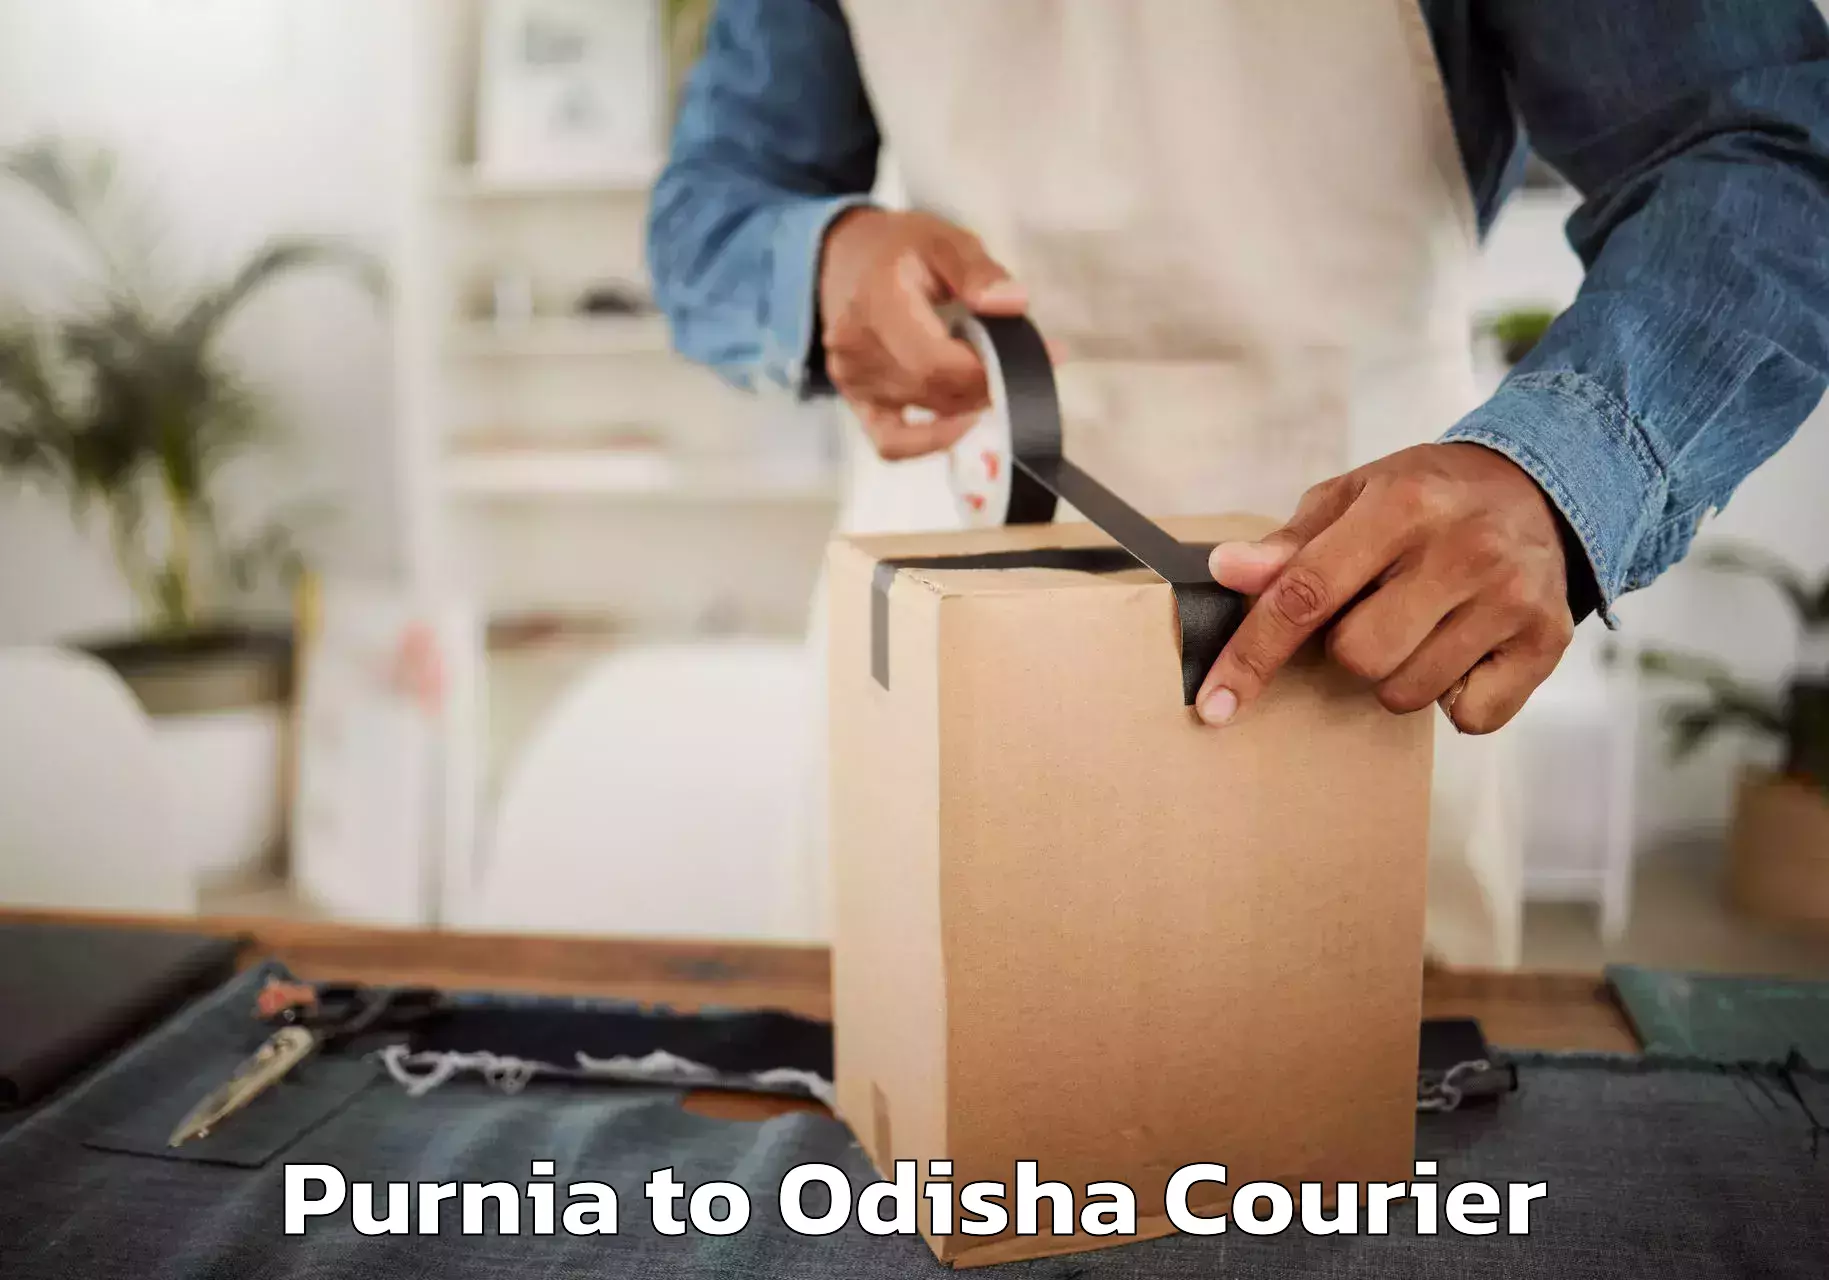 Home shifting experts Purnia to Raruan